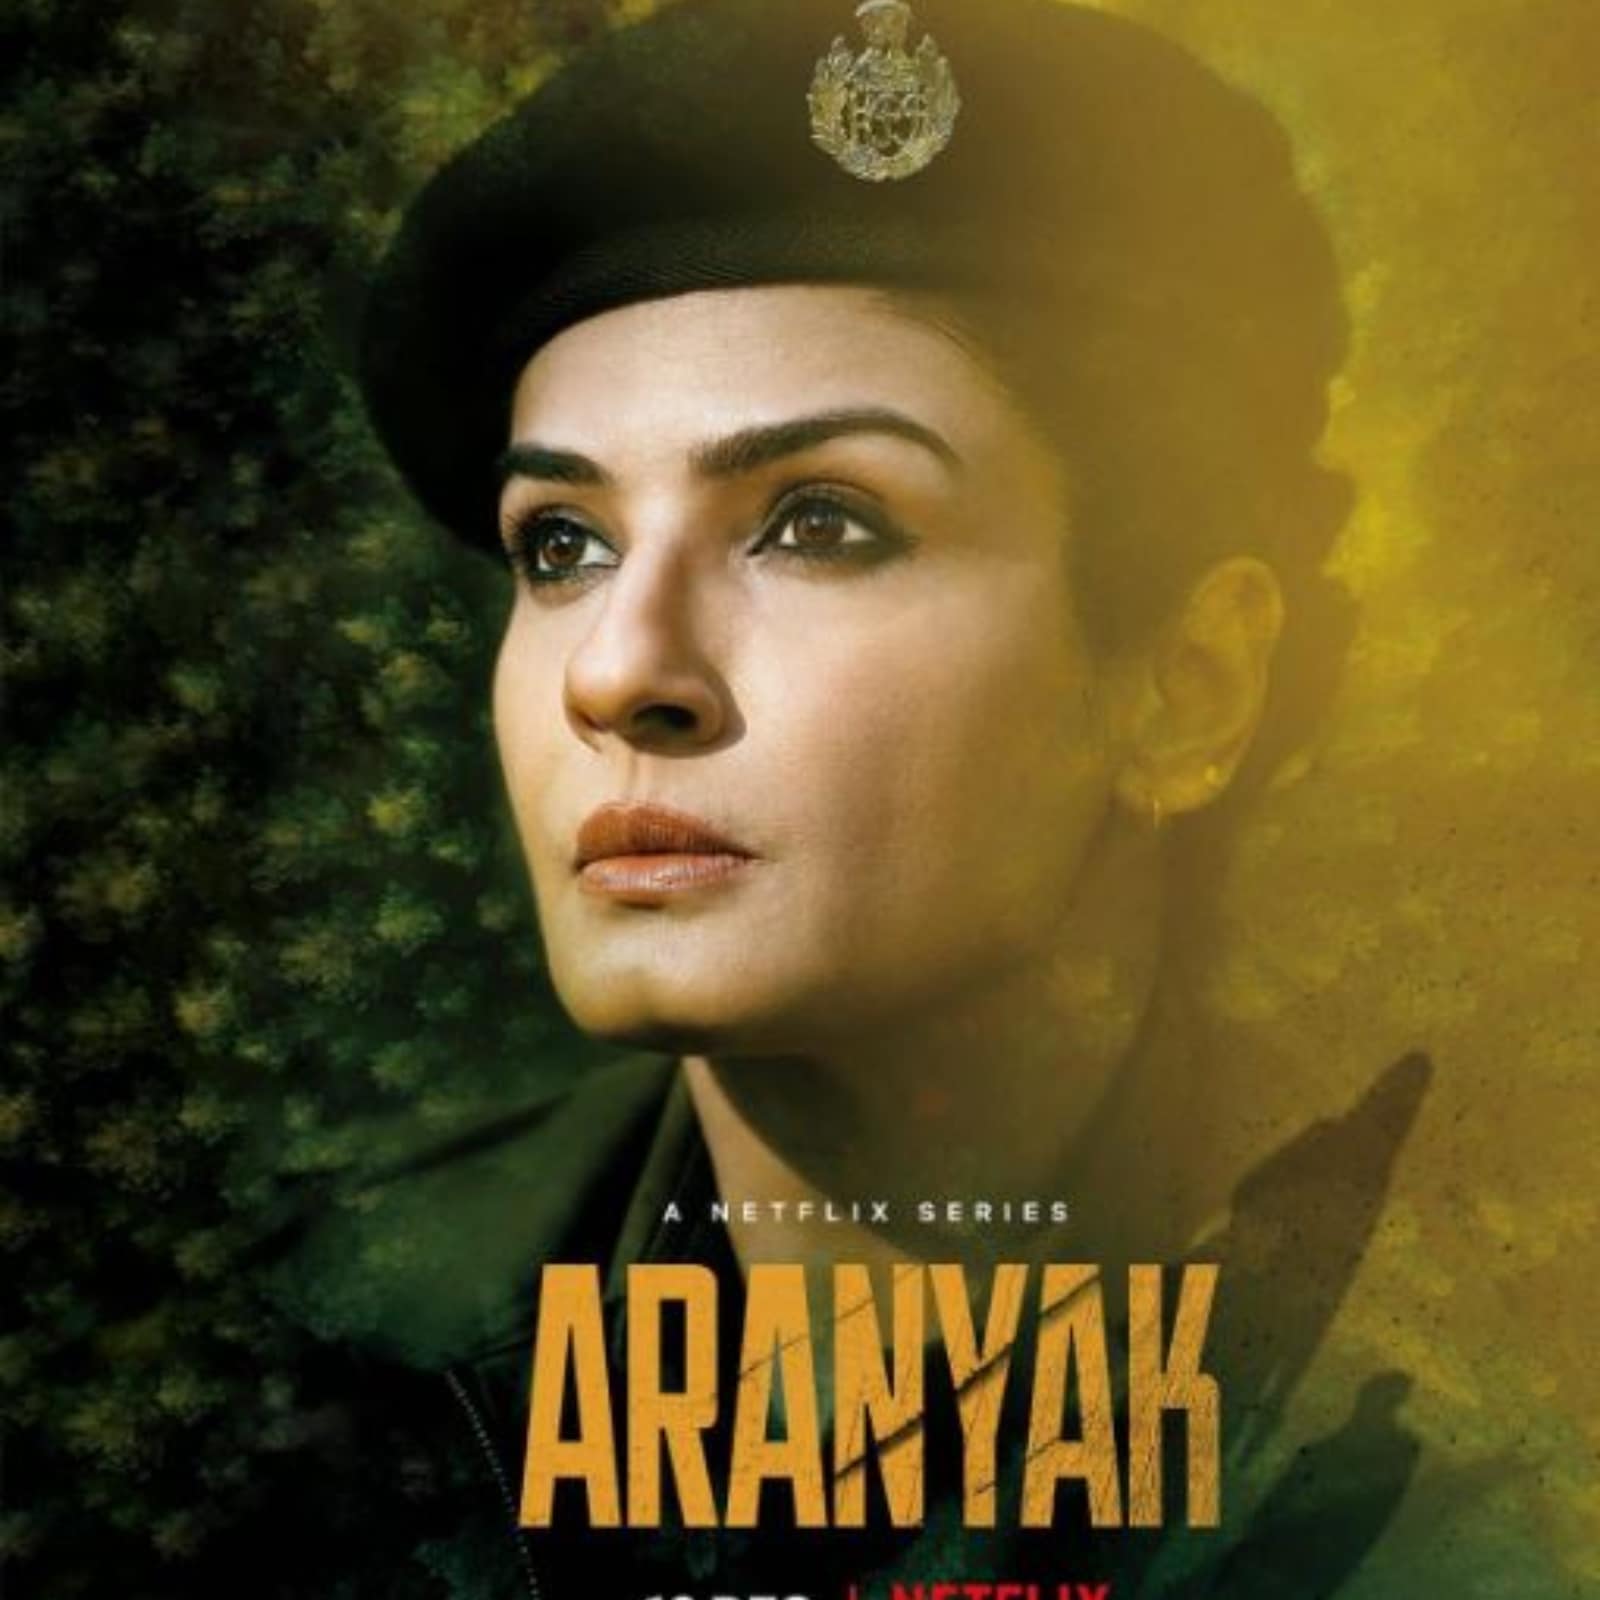 aranyak season 2 release date